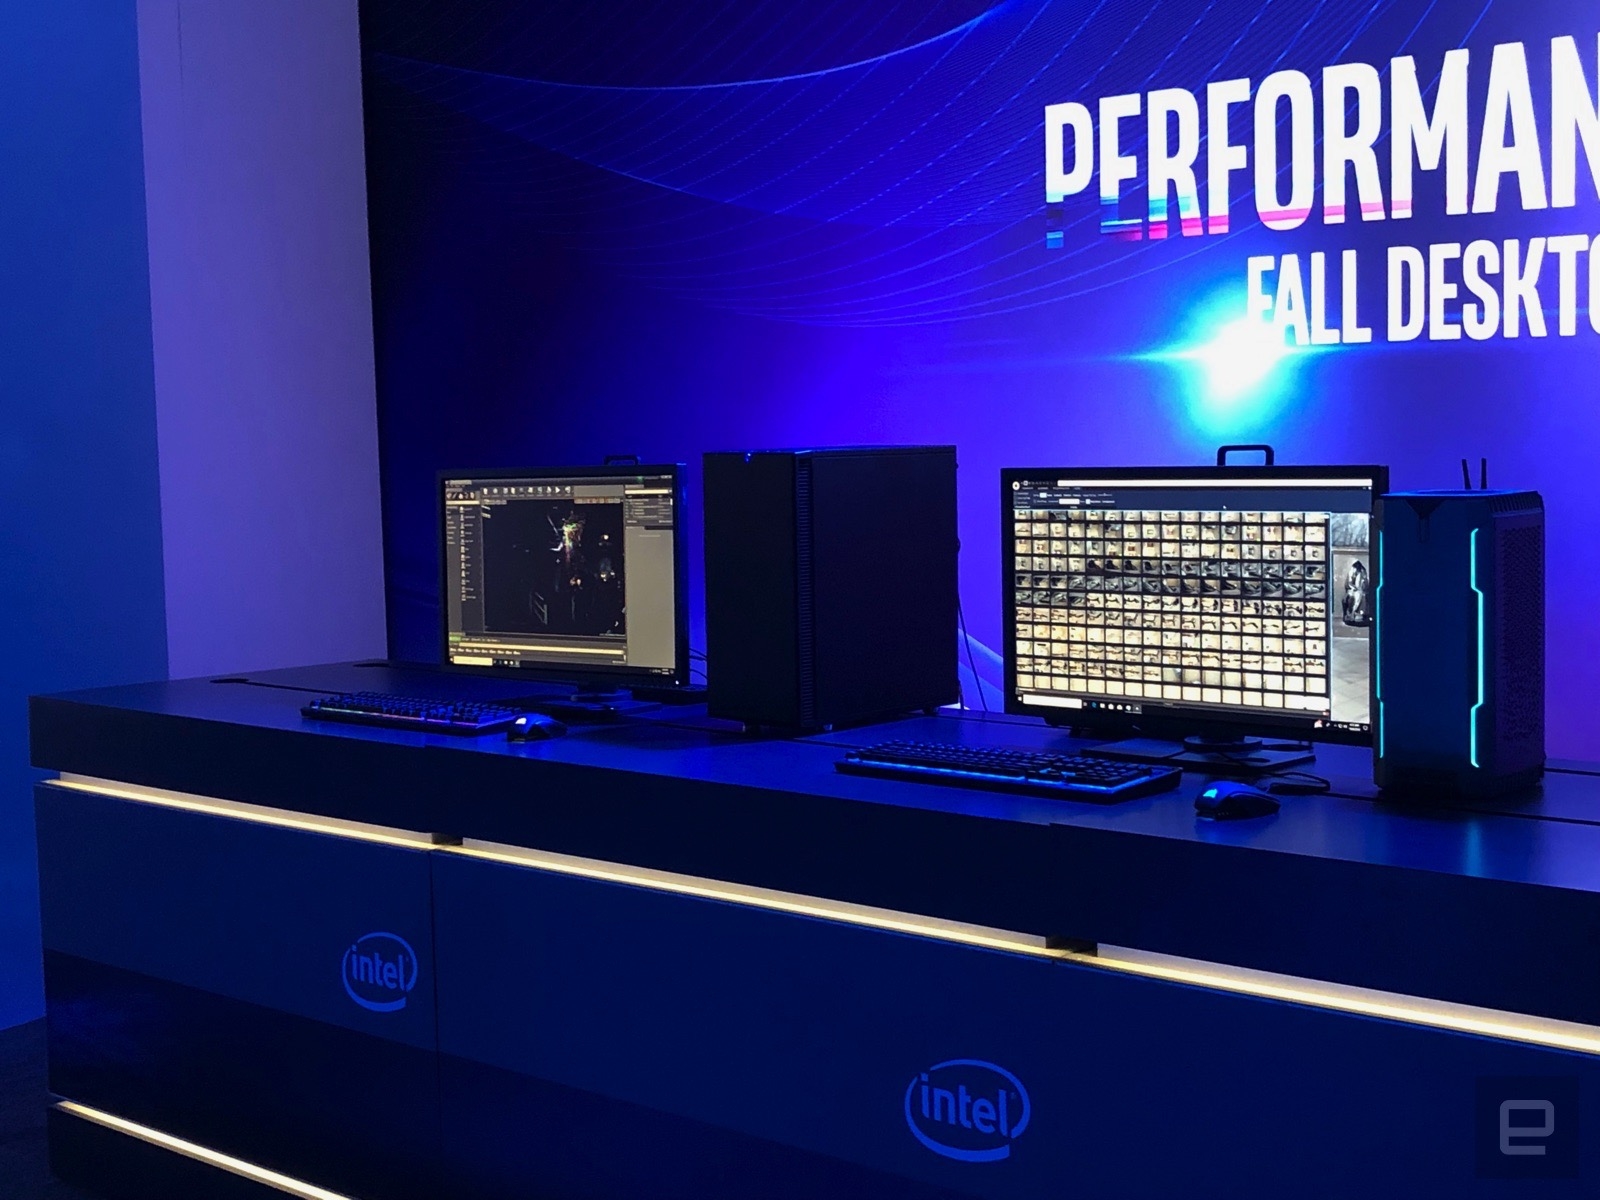 Intel представила процессоры девятого поколения